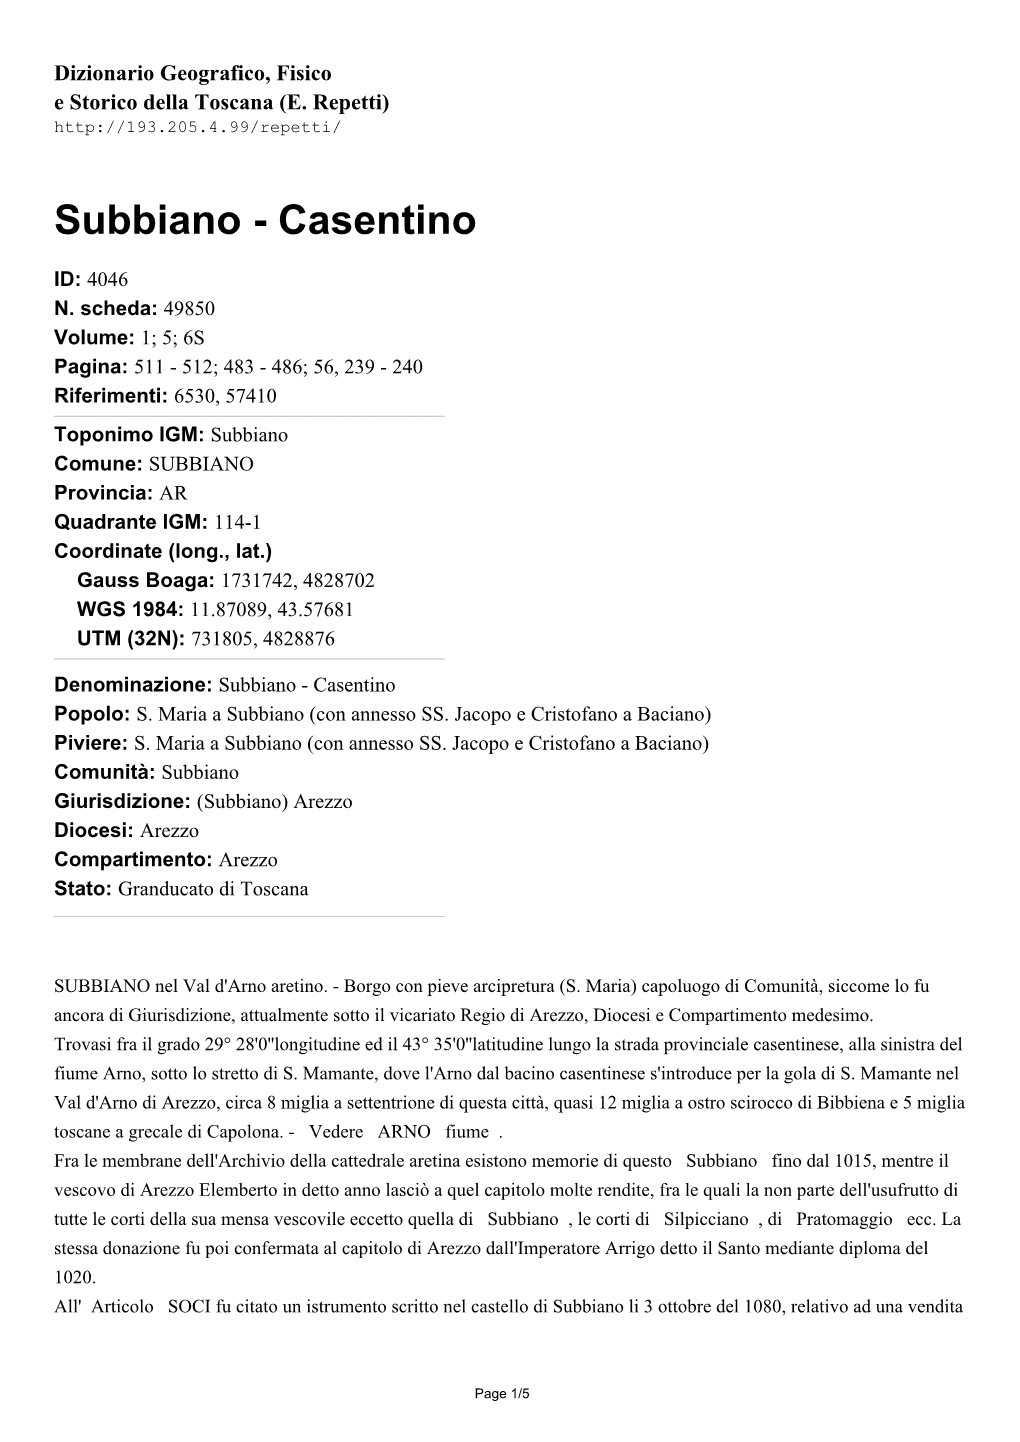 Subbiano - Casentino